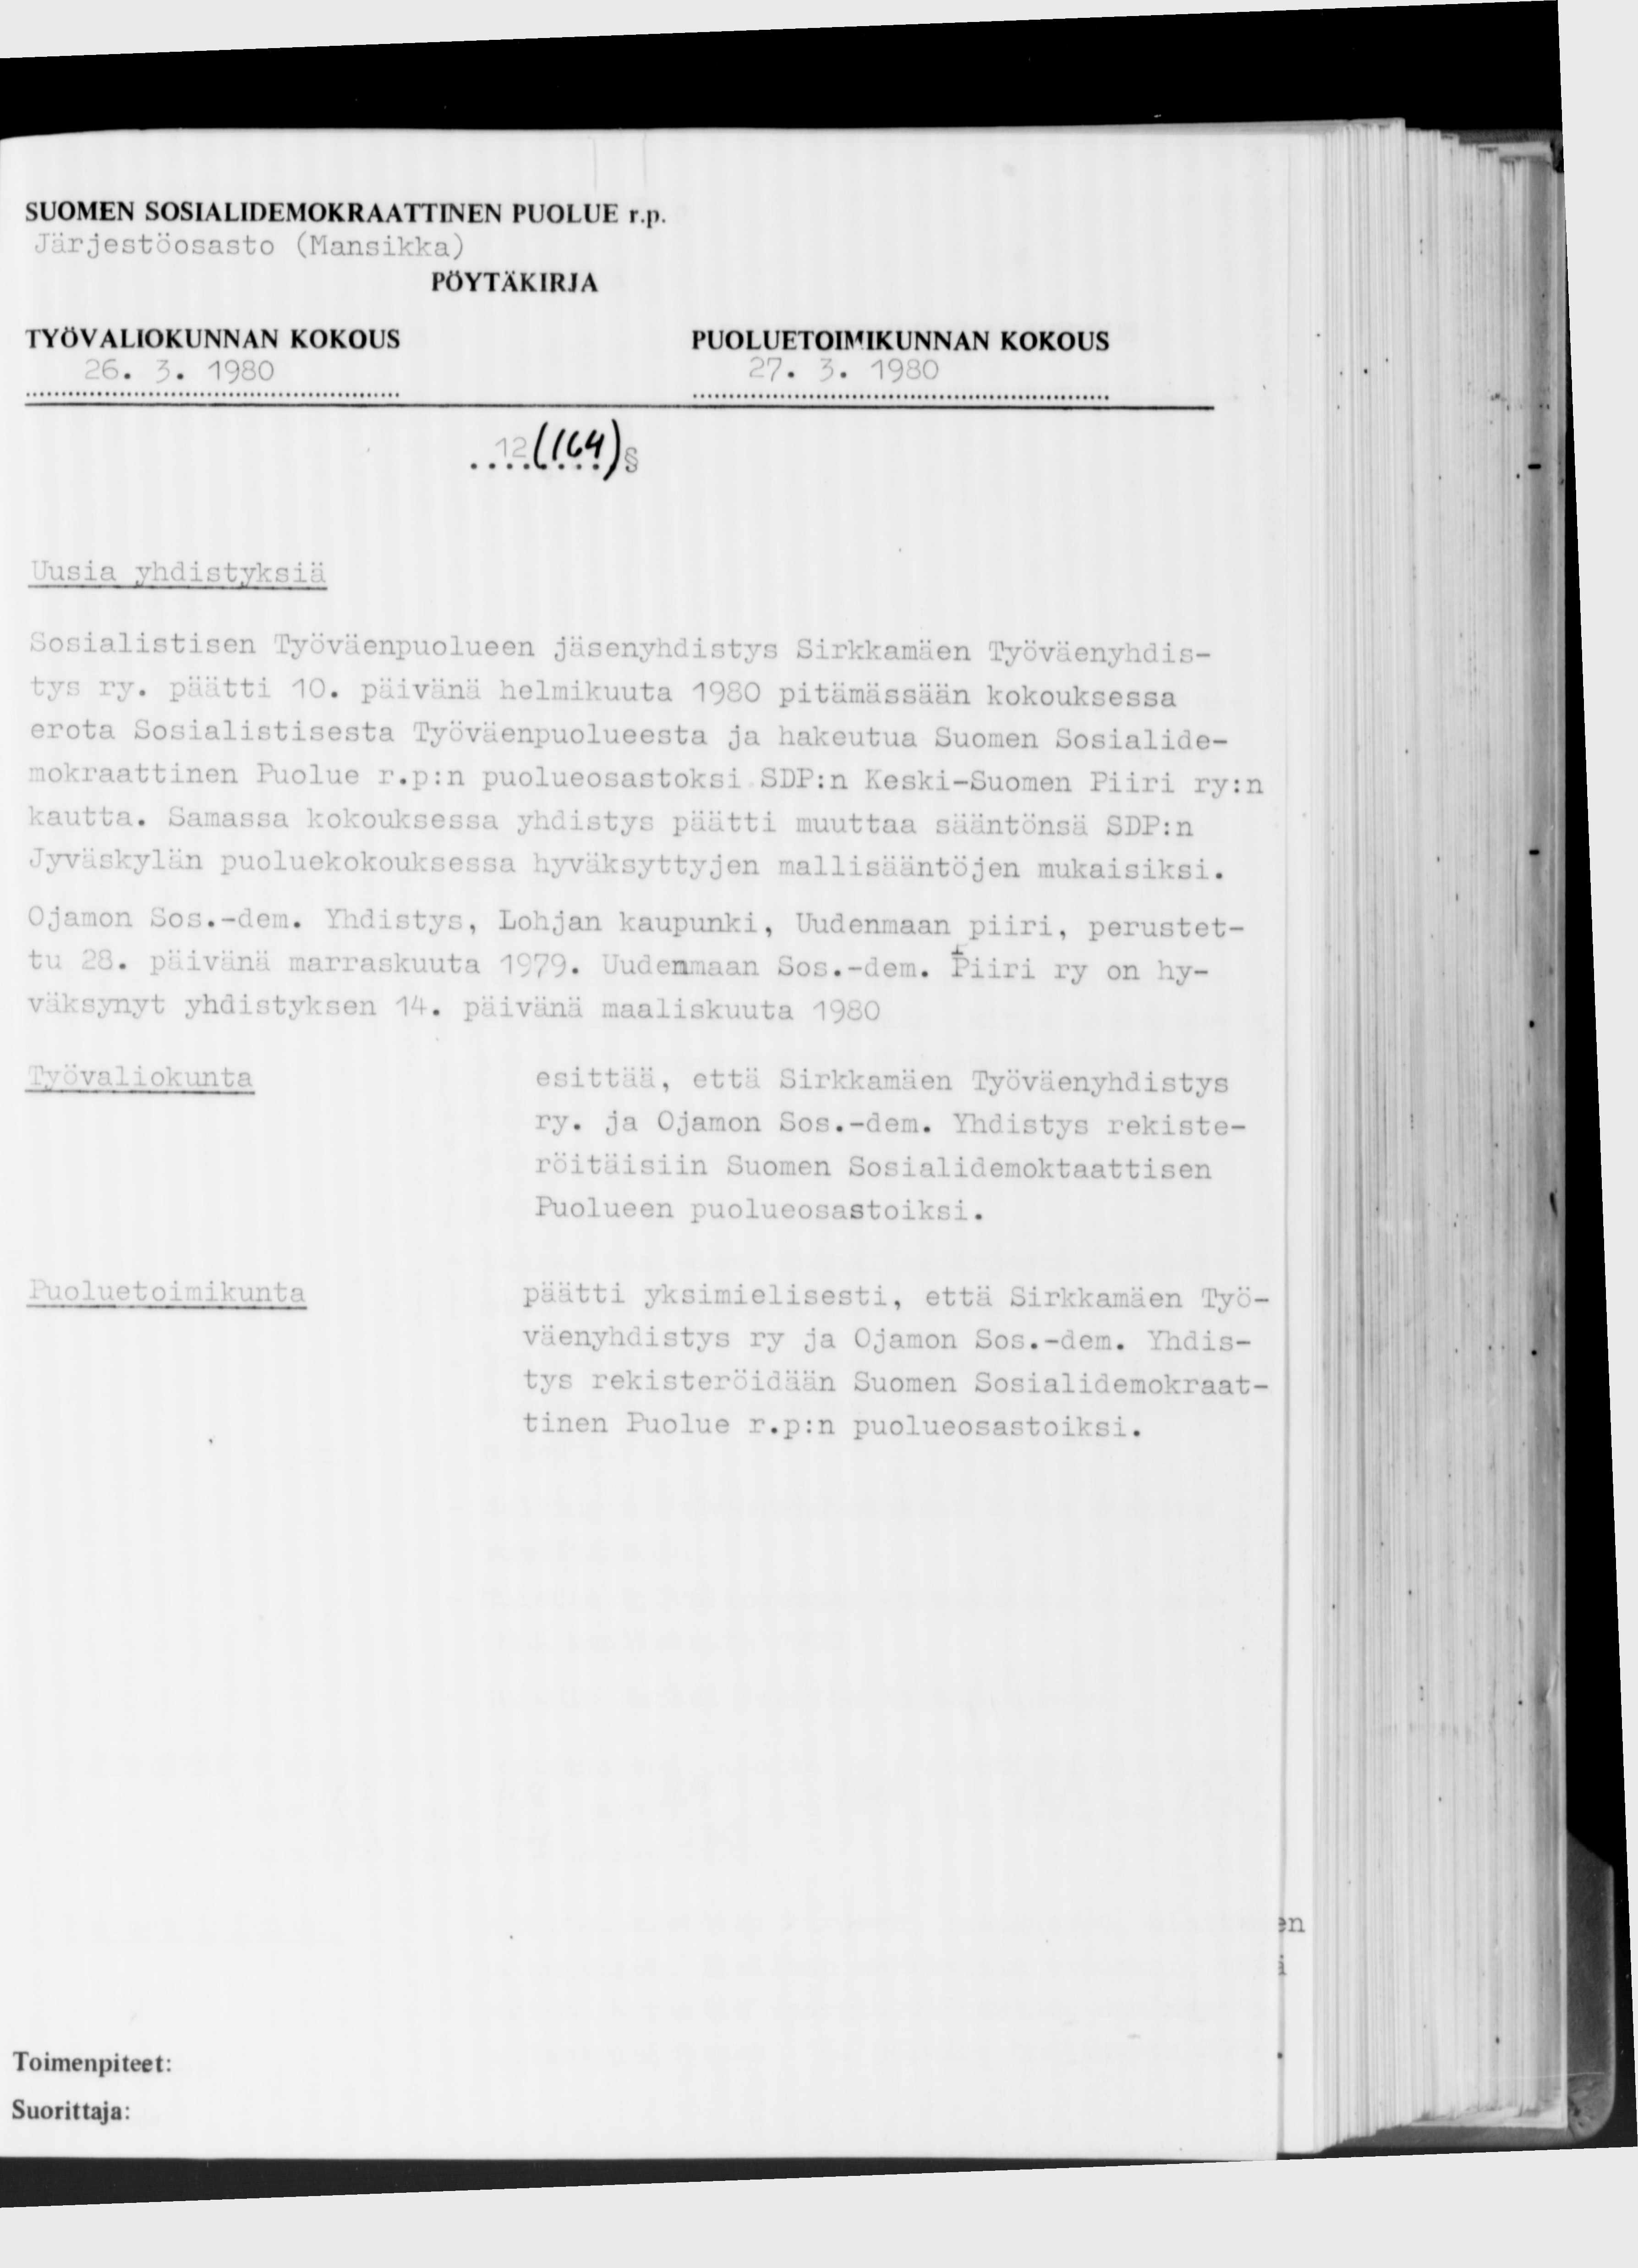 SUOMEN SOSIALIDEMOKRAATTINEN PUOLUE r.p Järjestöosasto (Mansikka) 26. 3. 1980 27. 3. 1980 1 1(с ч ) 'lusia yhdistyksiäa Sosialistisen Työväenpuolueen Jäsenyhdistys Sirkkamäen Työväenyhdistys ry.